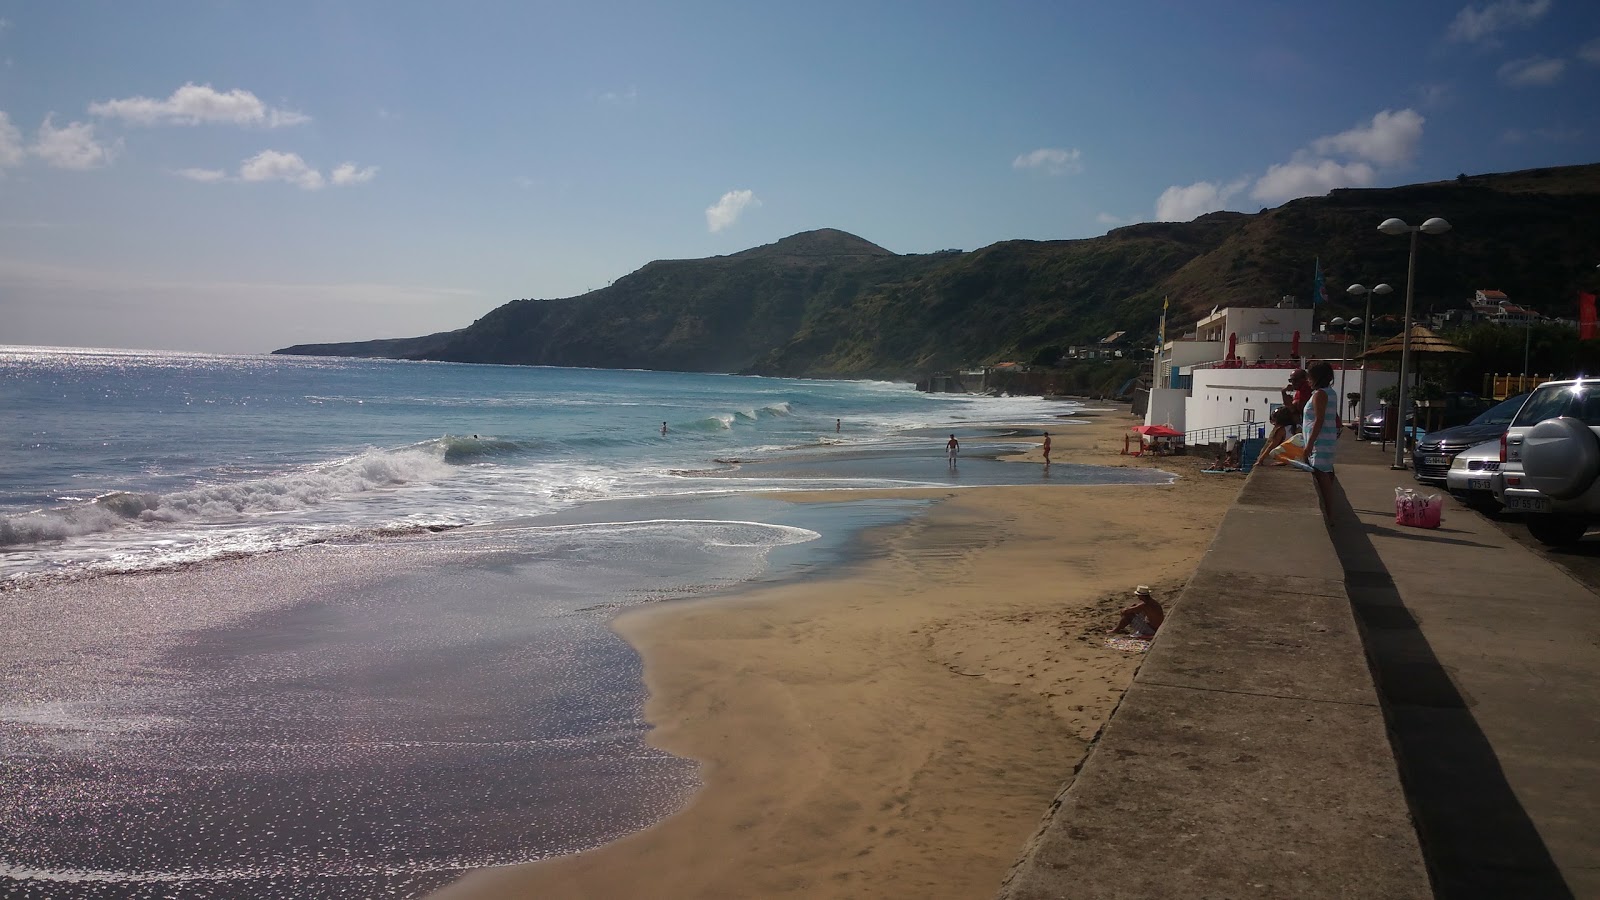 Praia Formosa'in fotoğrafı çok temiz temizlik seviyesi ile